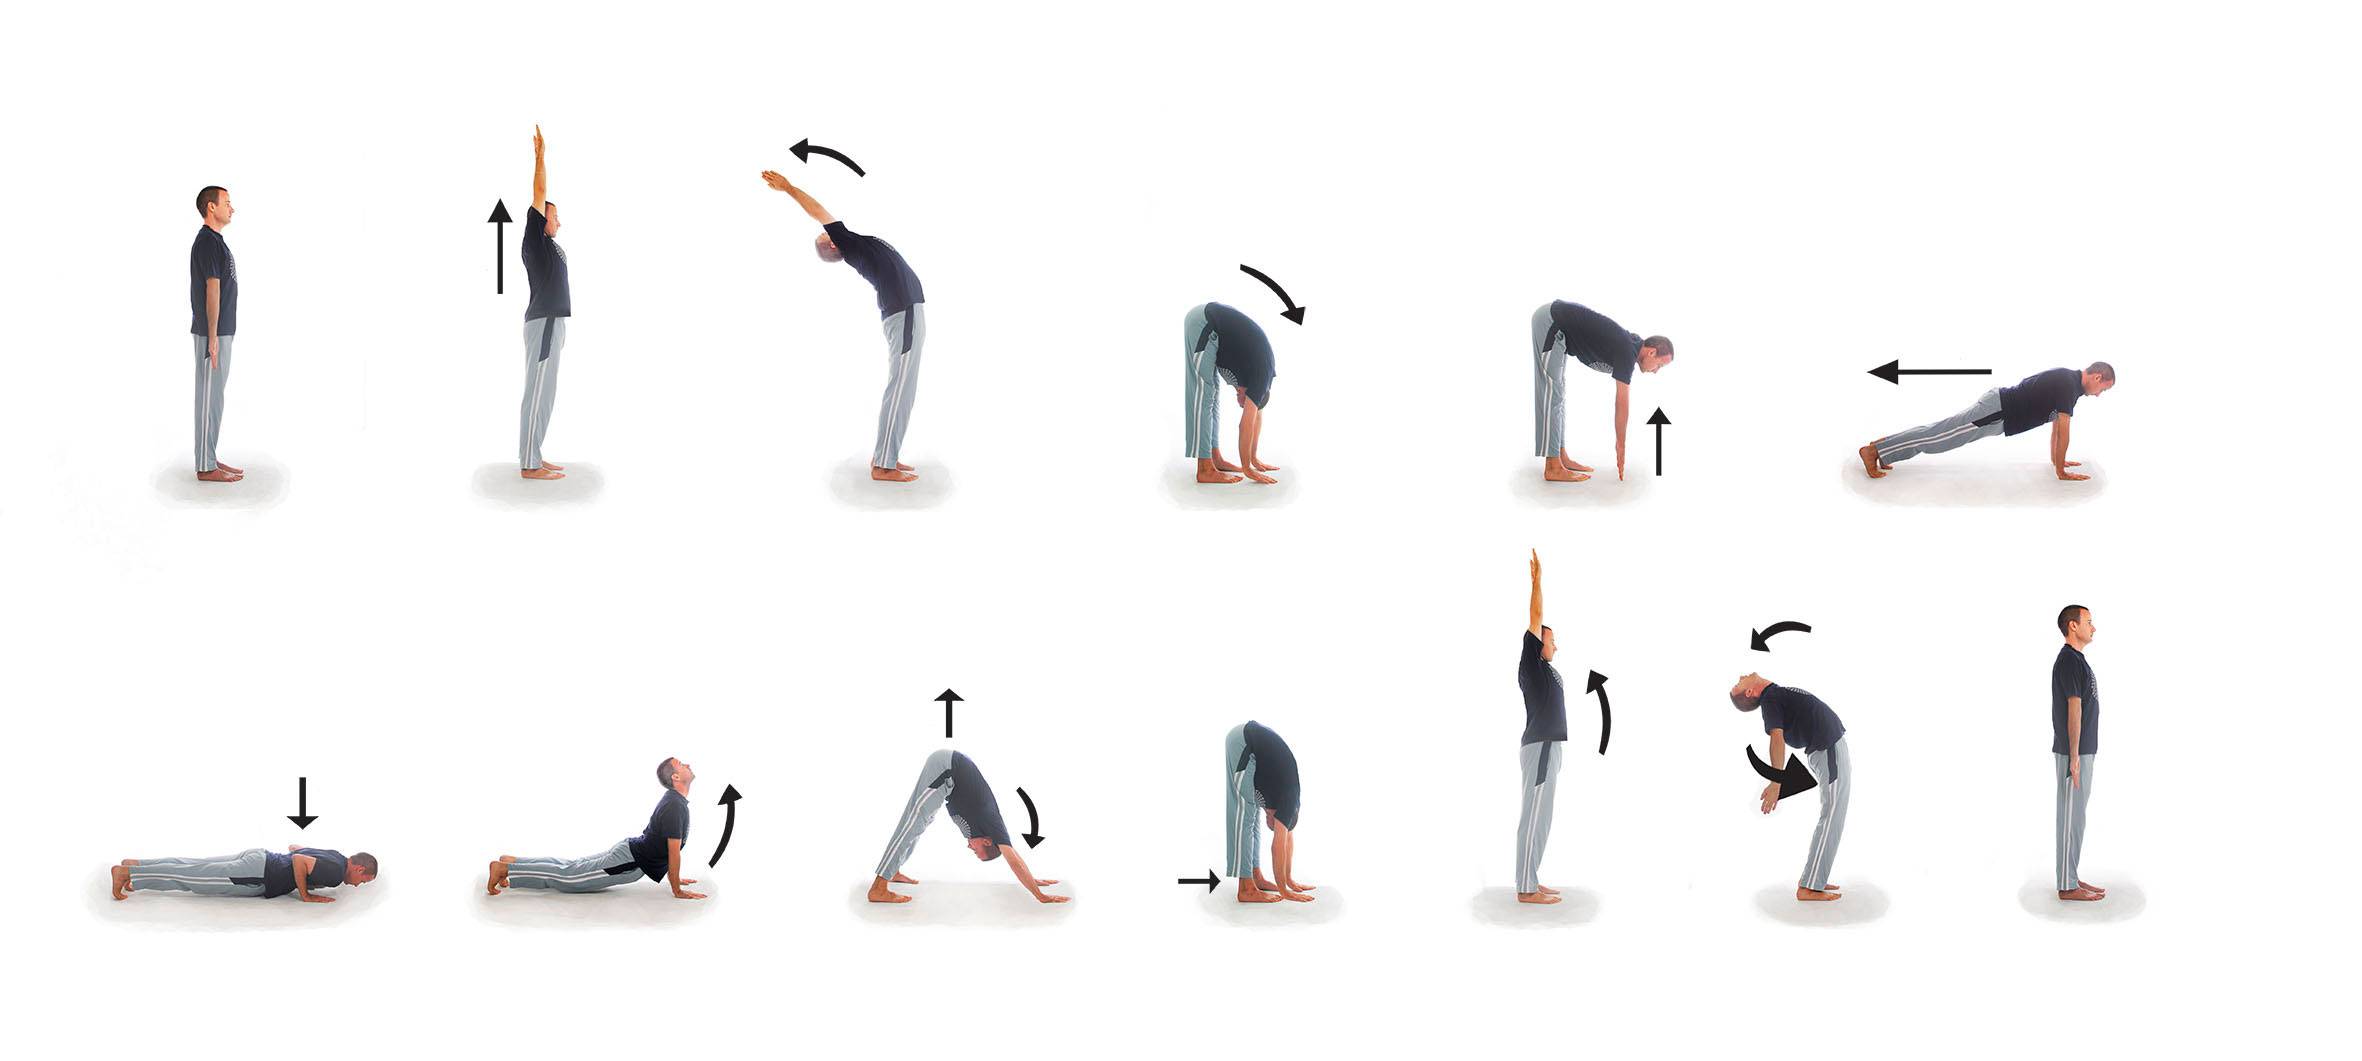 Йога для начинающих дома: 135 фото простых упражнений и советы как правильно заниматься йогой